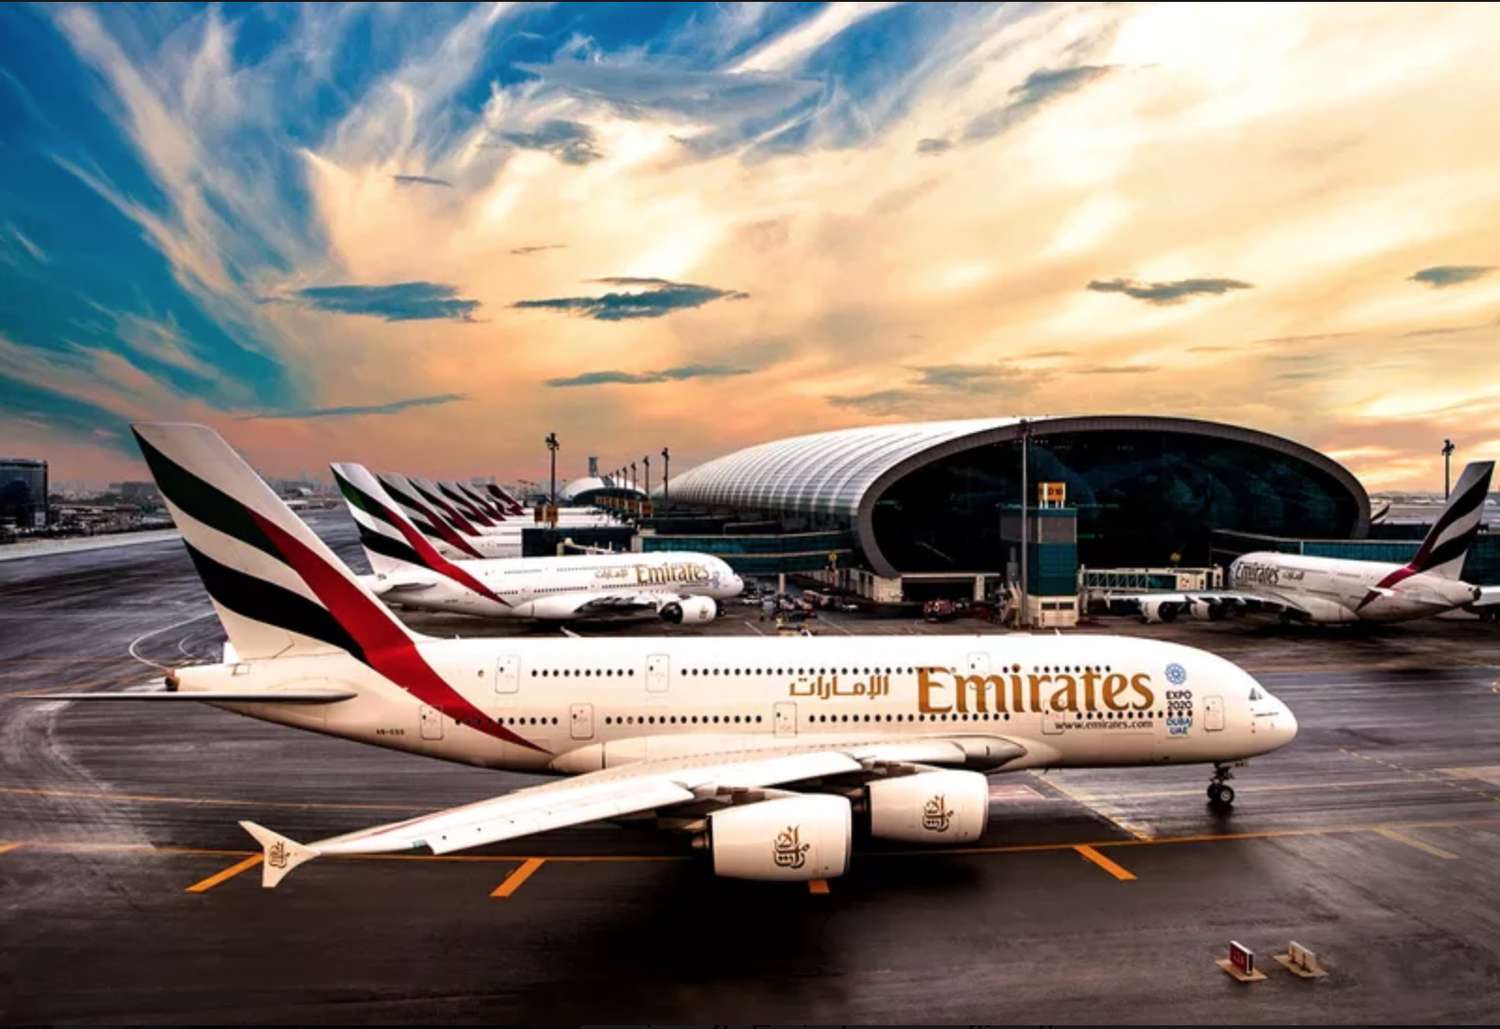 EmiratesAirline.jpg